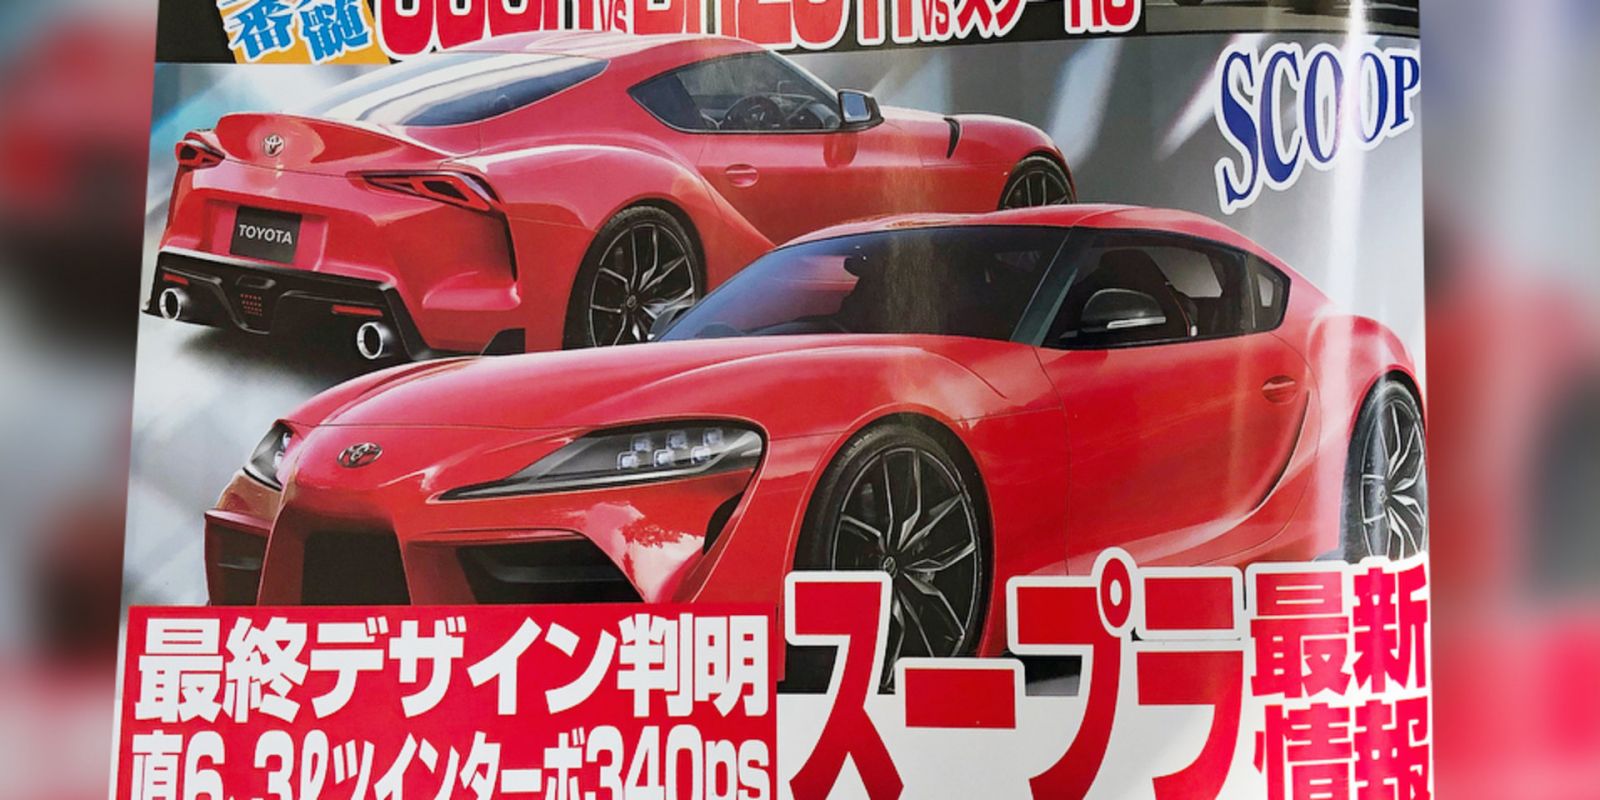 มาแน่ๆ รถซิ่งตัวแรง Toyota Supra ที่มีภาพหลุดจากสื่อในญี่ปุ่นแล้ว |  Autodeft ข่าวรถยนต์ รีวิวรถ รถใหม่ รถออกใหม่ รถมาใหม่ ราคารถ ใบขับขี่.